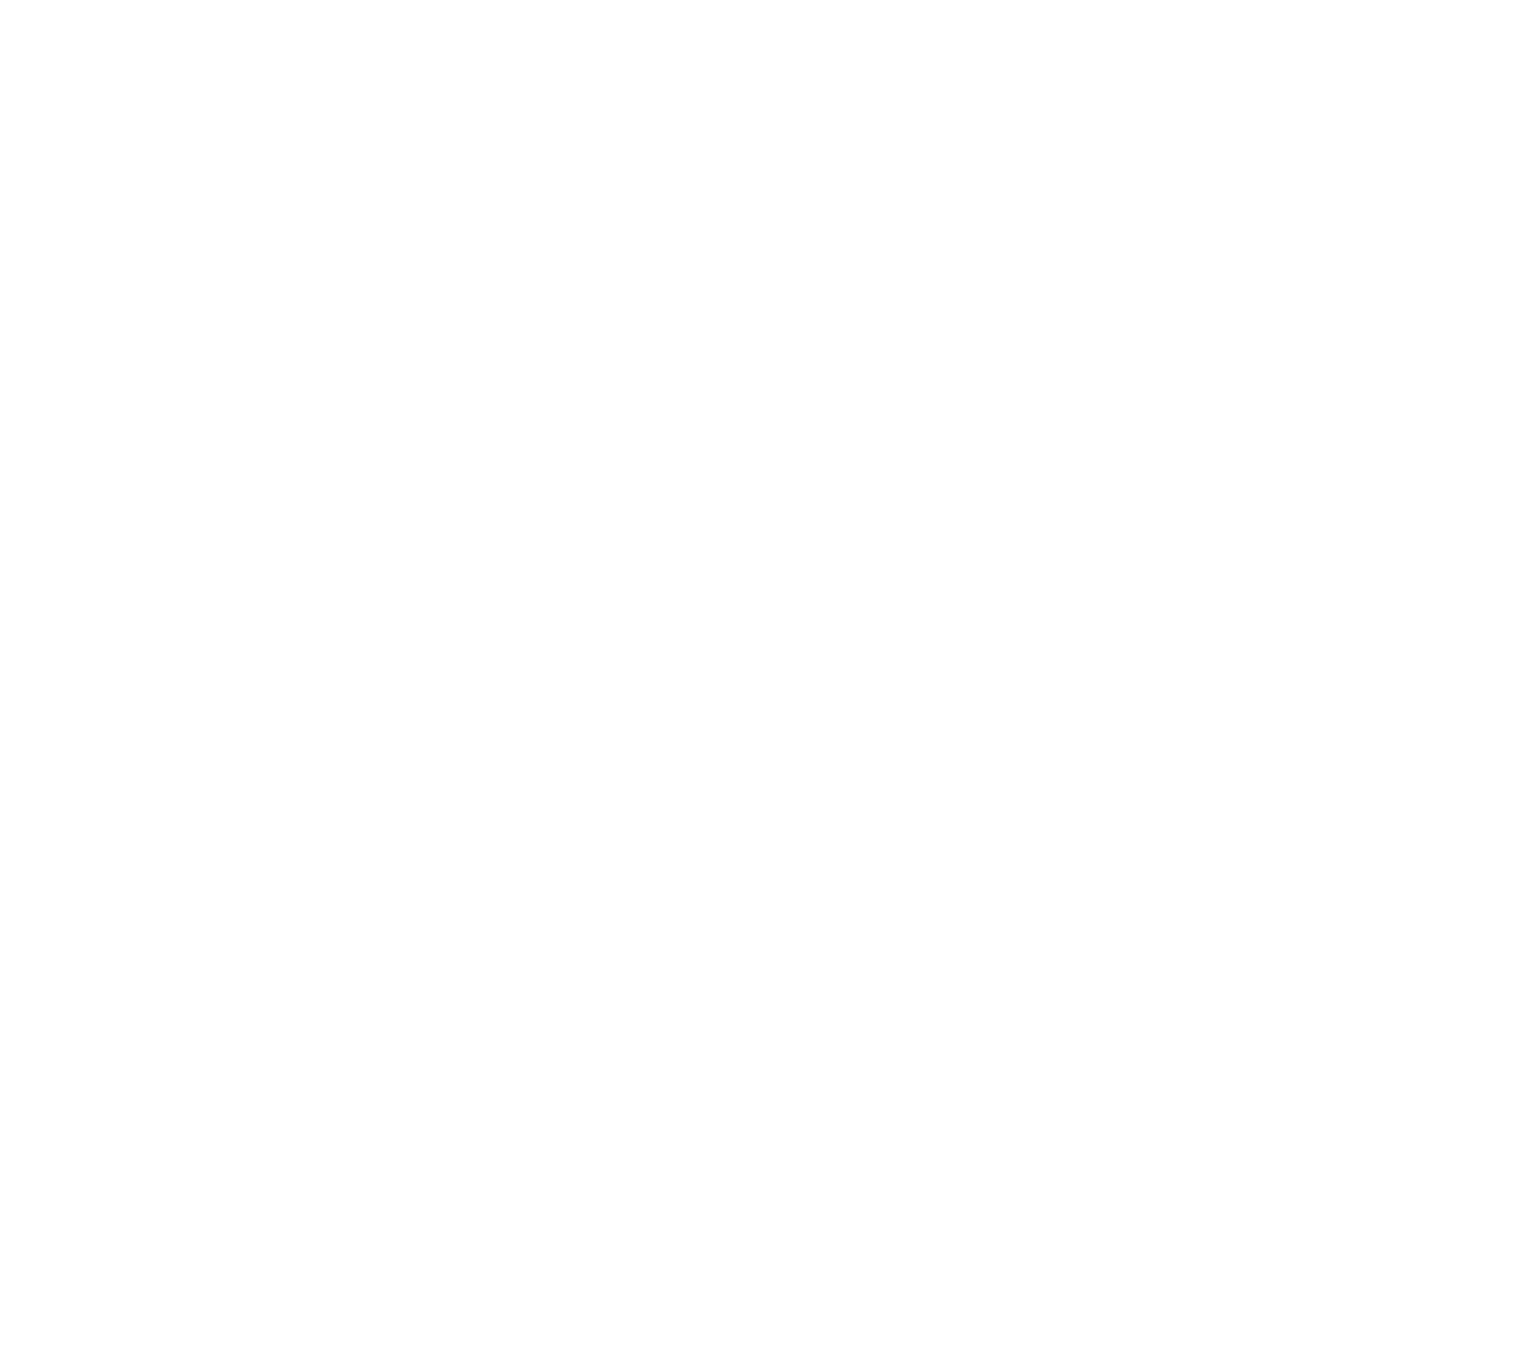 Paragon 28 logo for dark backgrounds (transparent PNG)